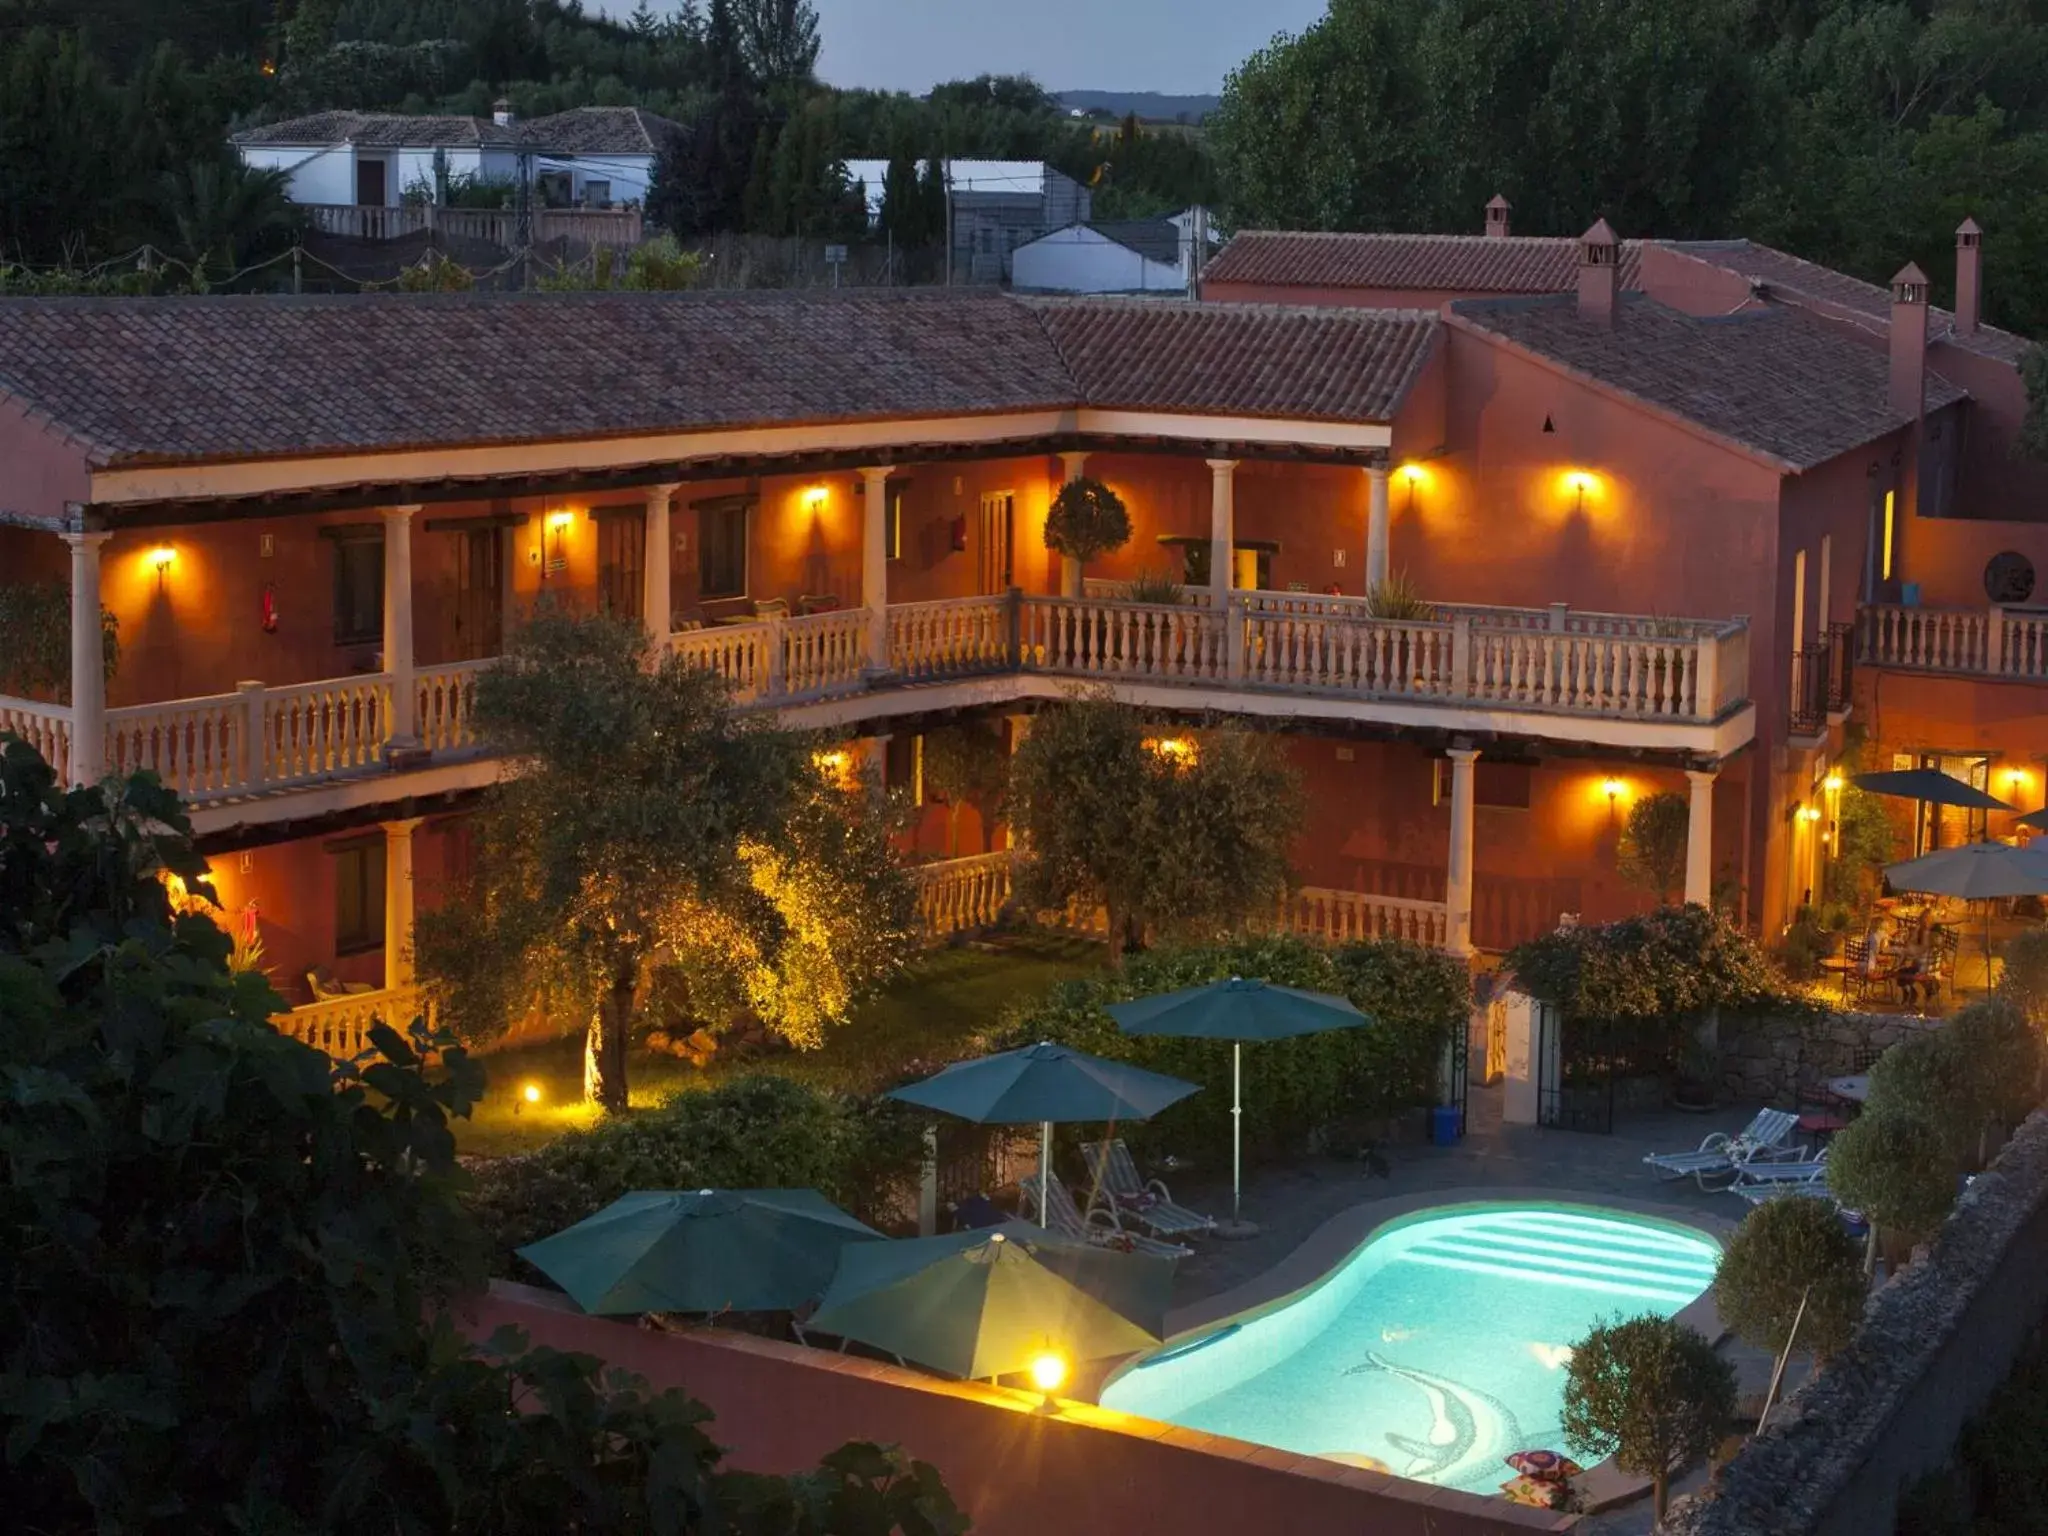 Property building, Pool View in Hotel Rural Molino del Puente Ronda